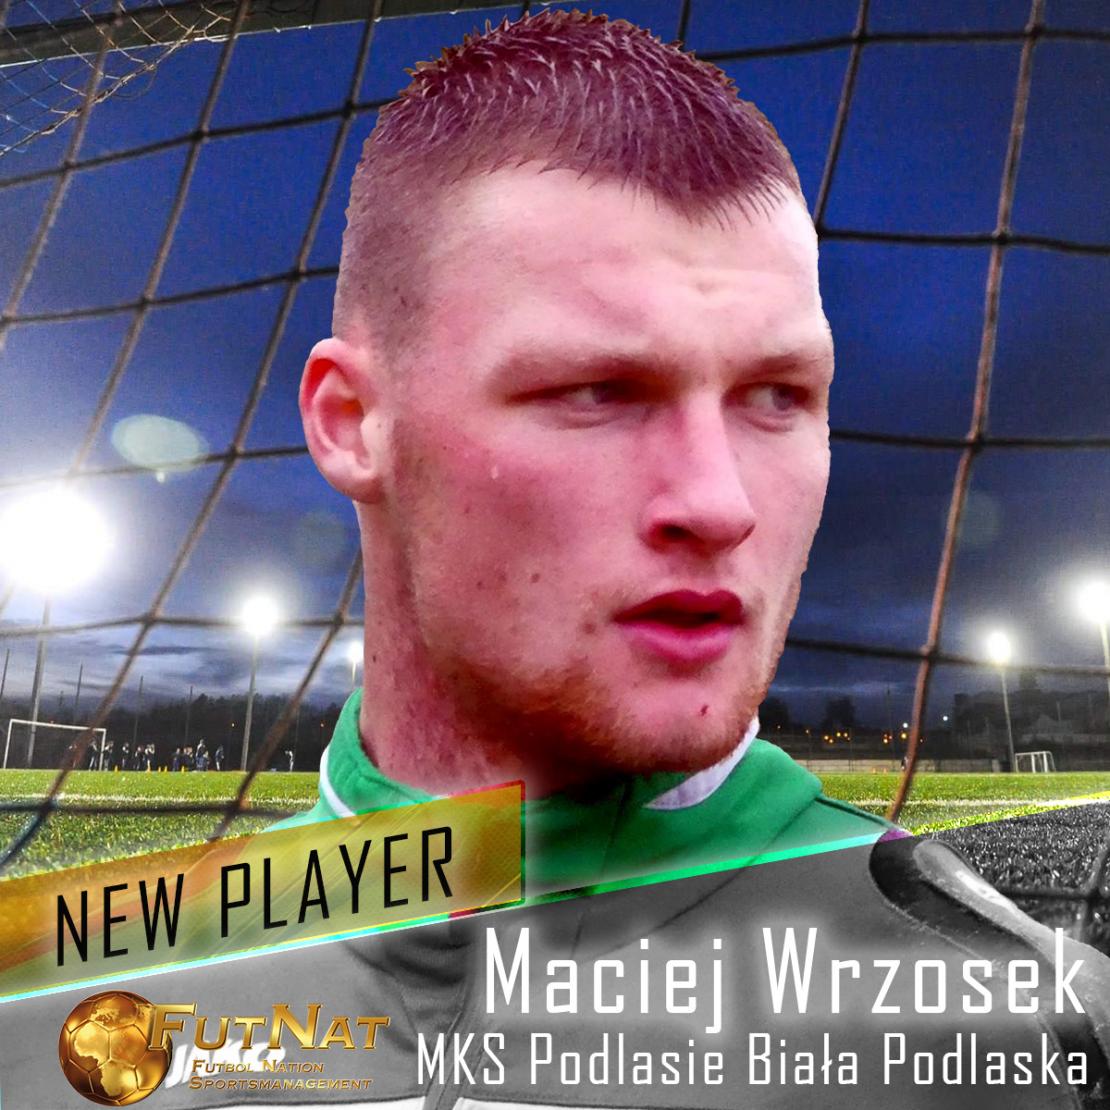 Maciej Wrzosek neuer Spieler f&uuml;r FutNat. come.